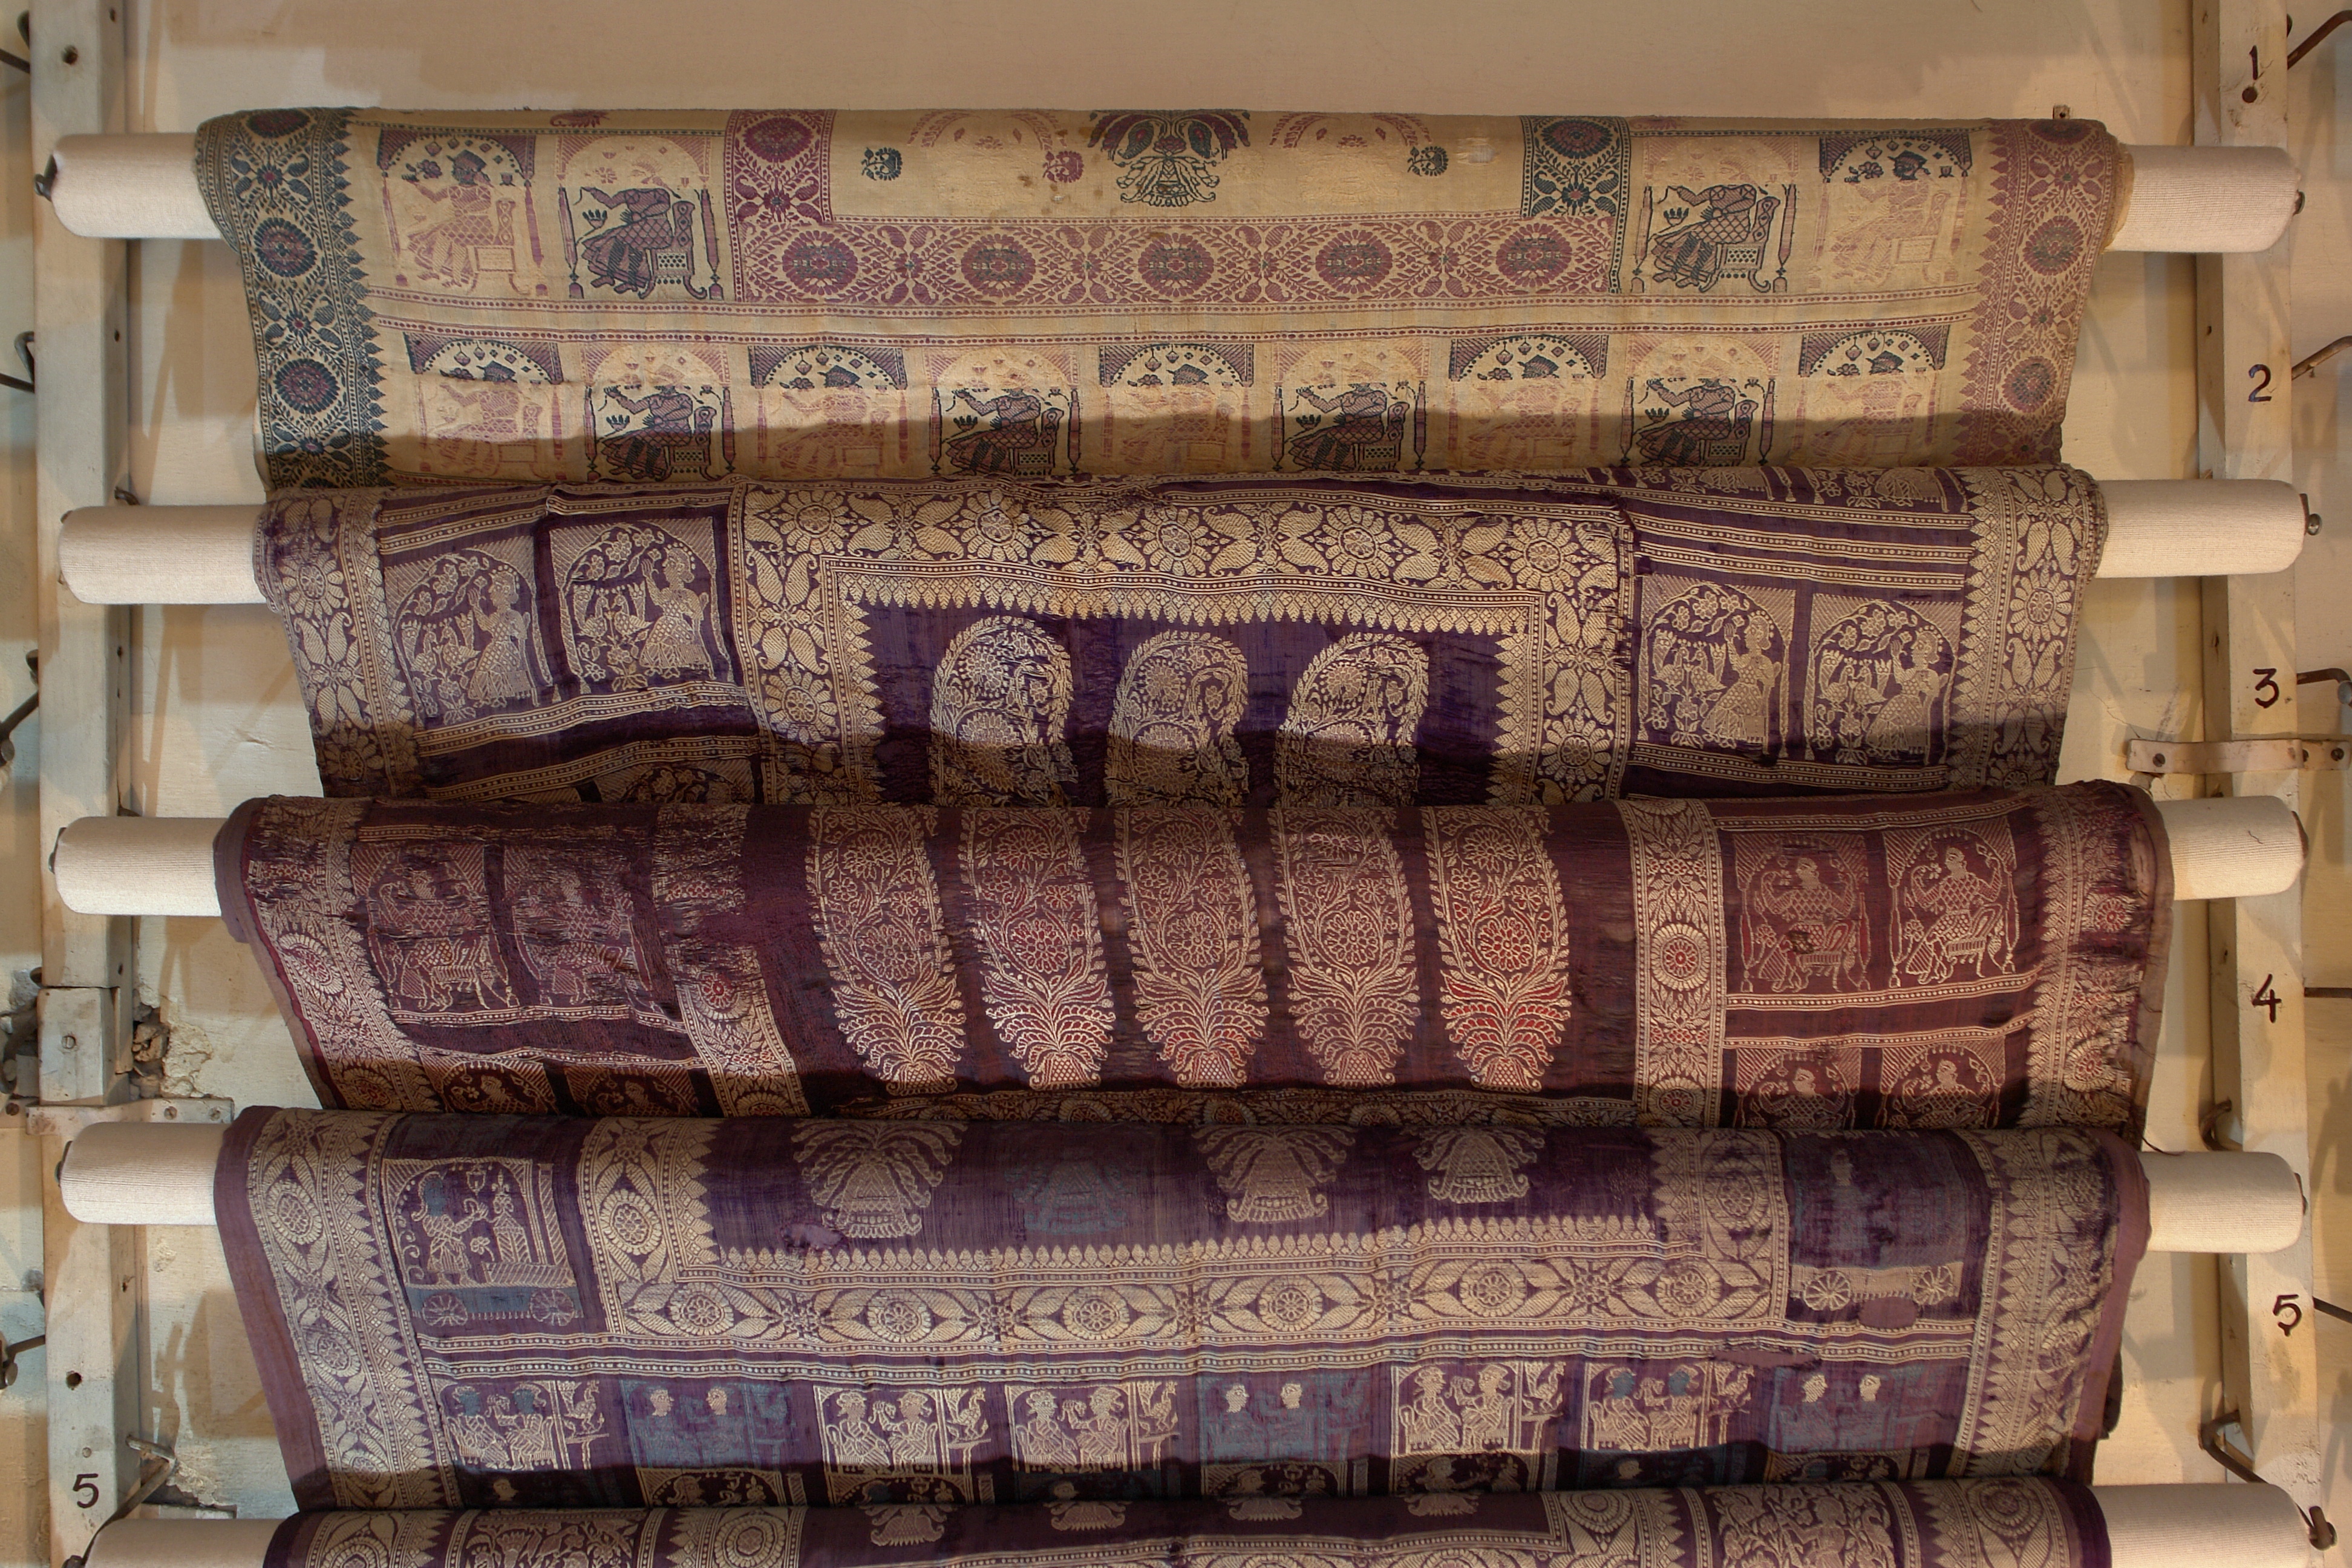 Saris 4, Crafts Museum, New Delhi, India